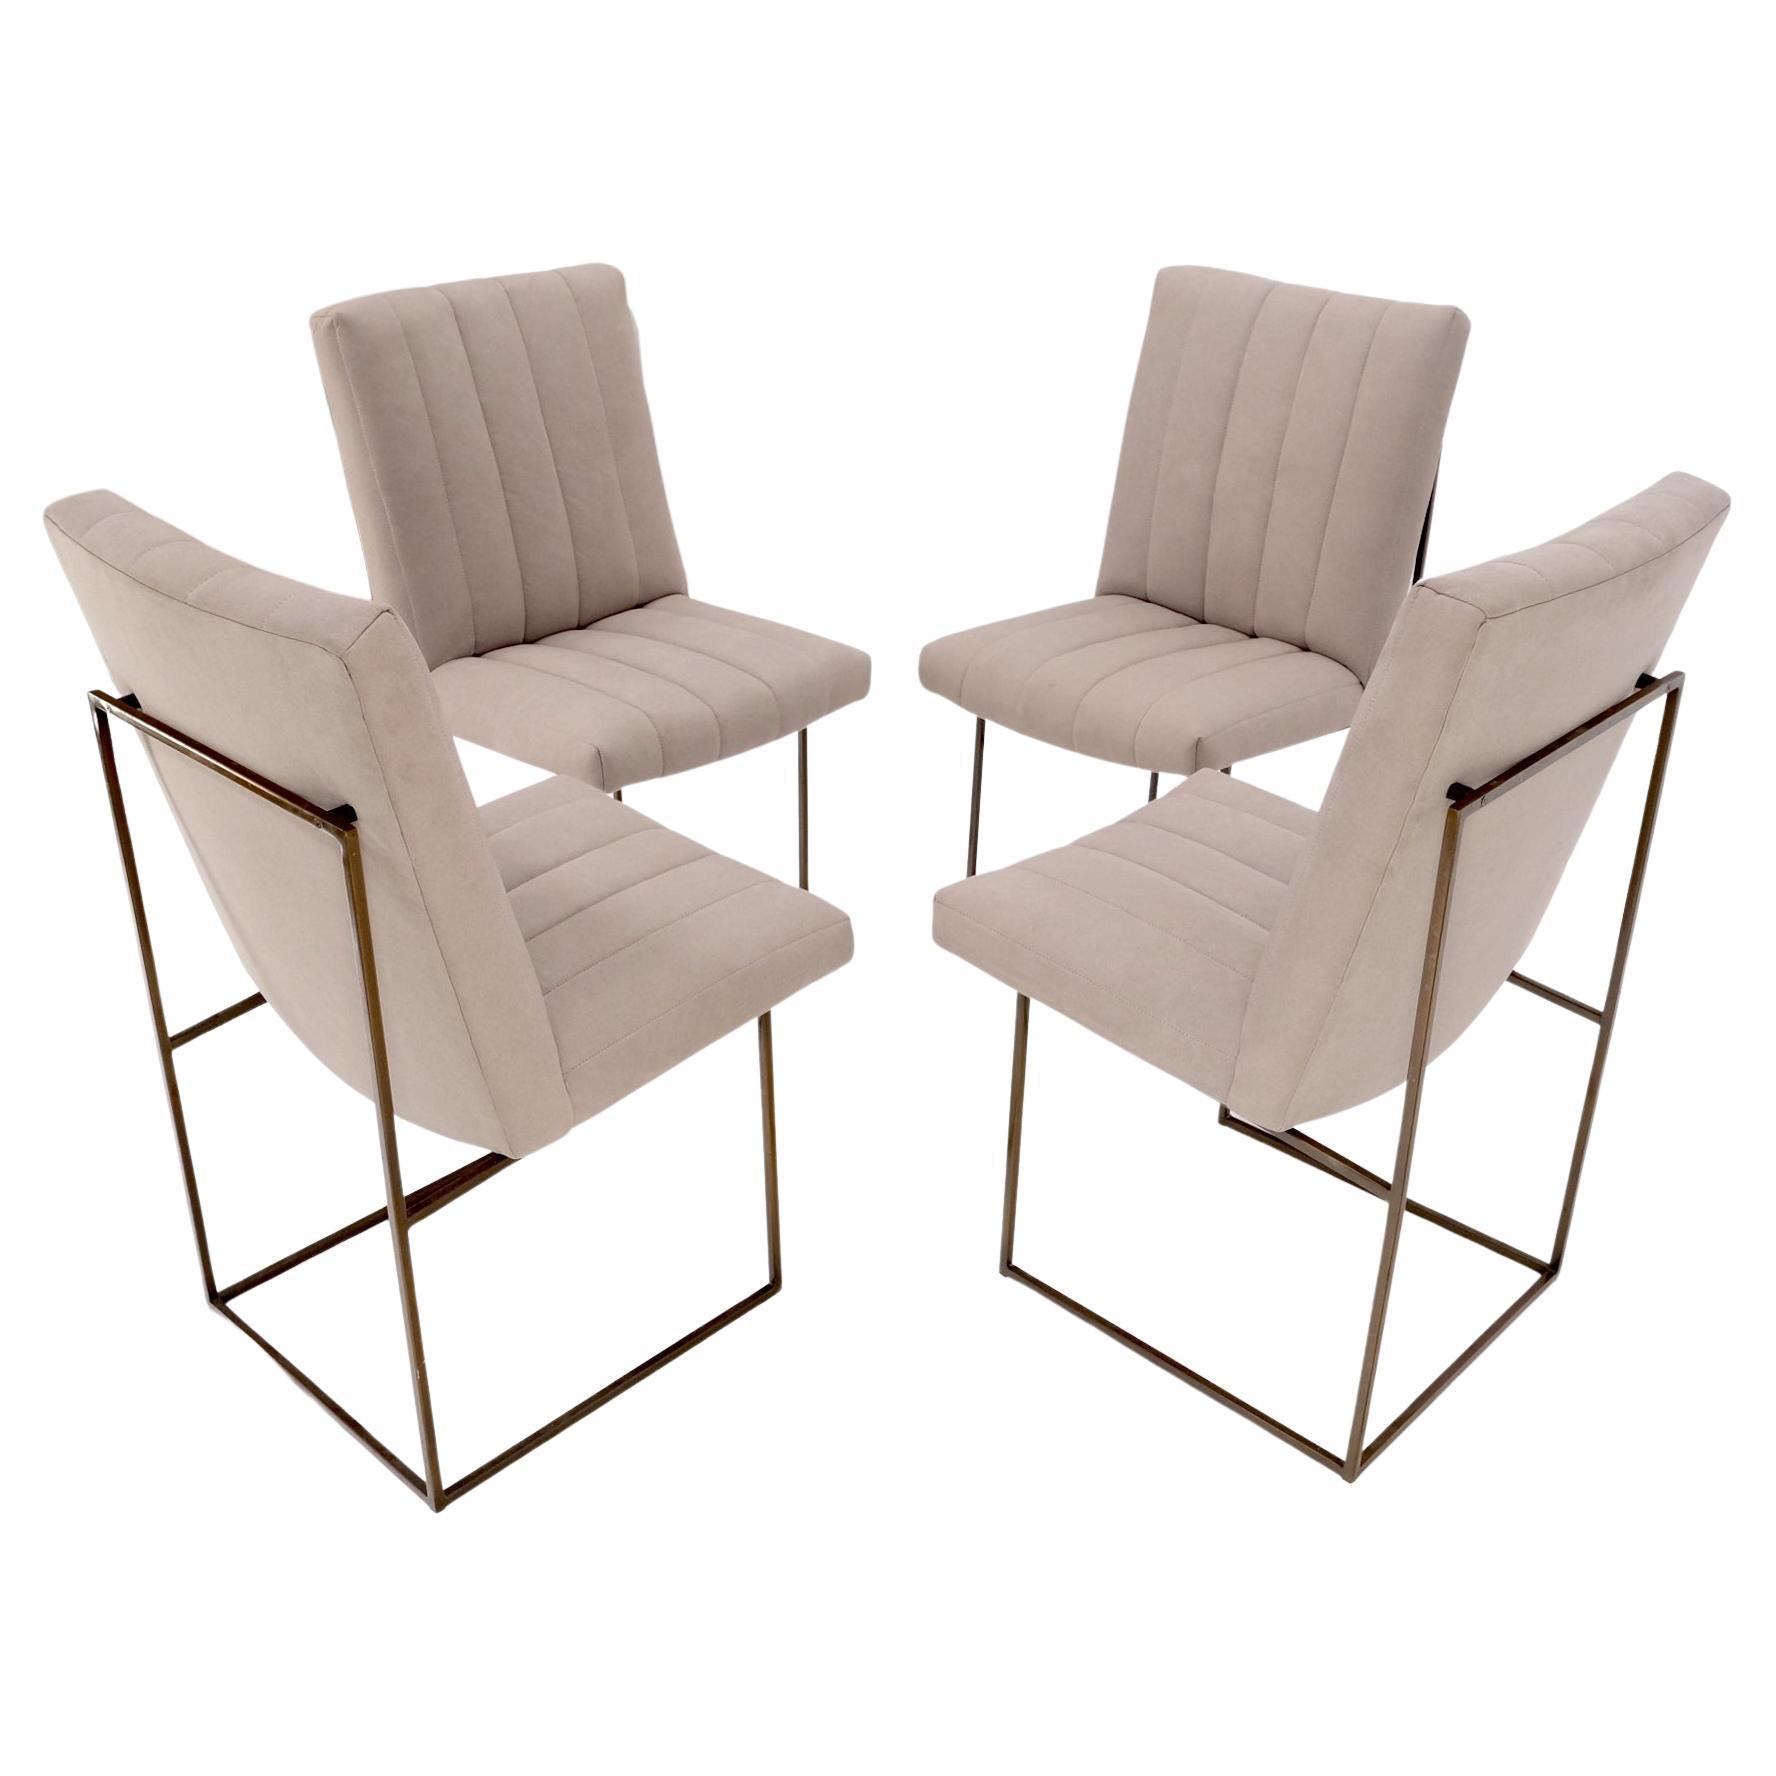 Ensemble de 4 chaises de salle à manger Milo Baughman de style mi-siècle moderne recouvertes d'un nouveau tissu Alcantera